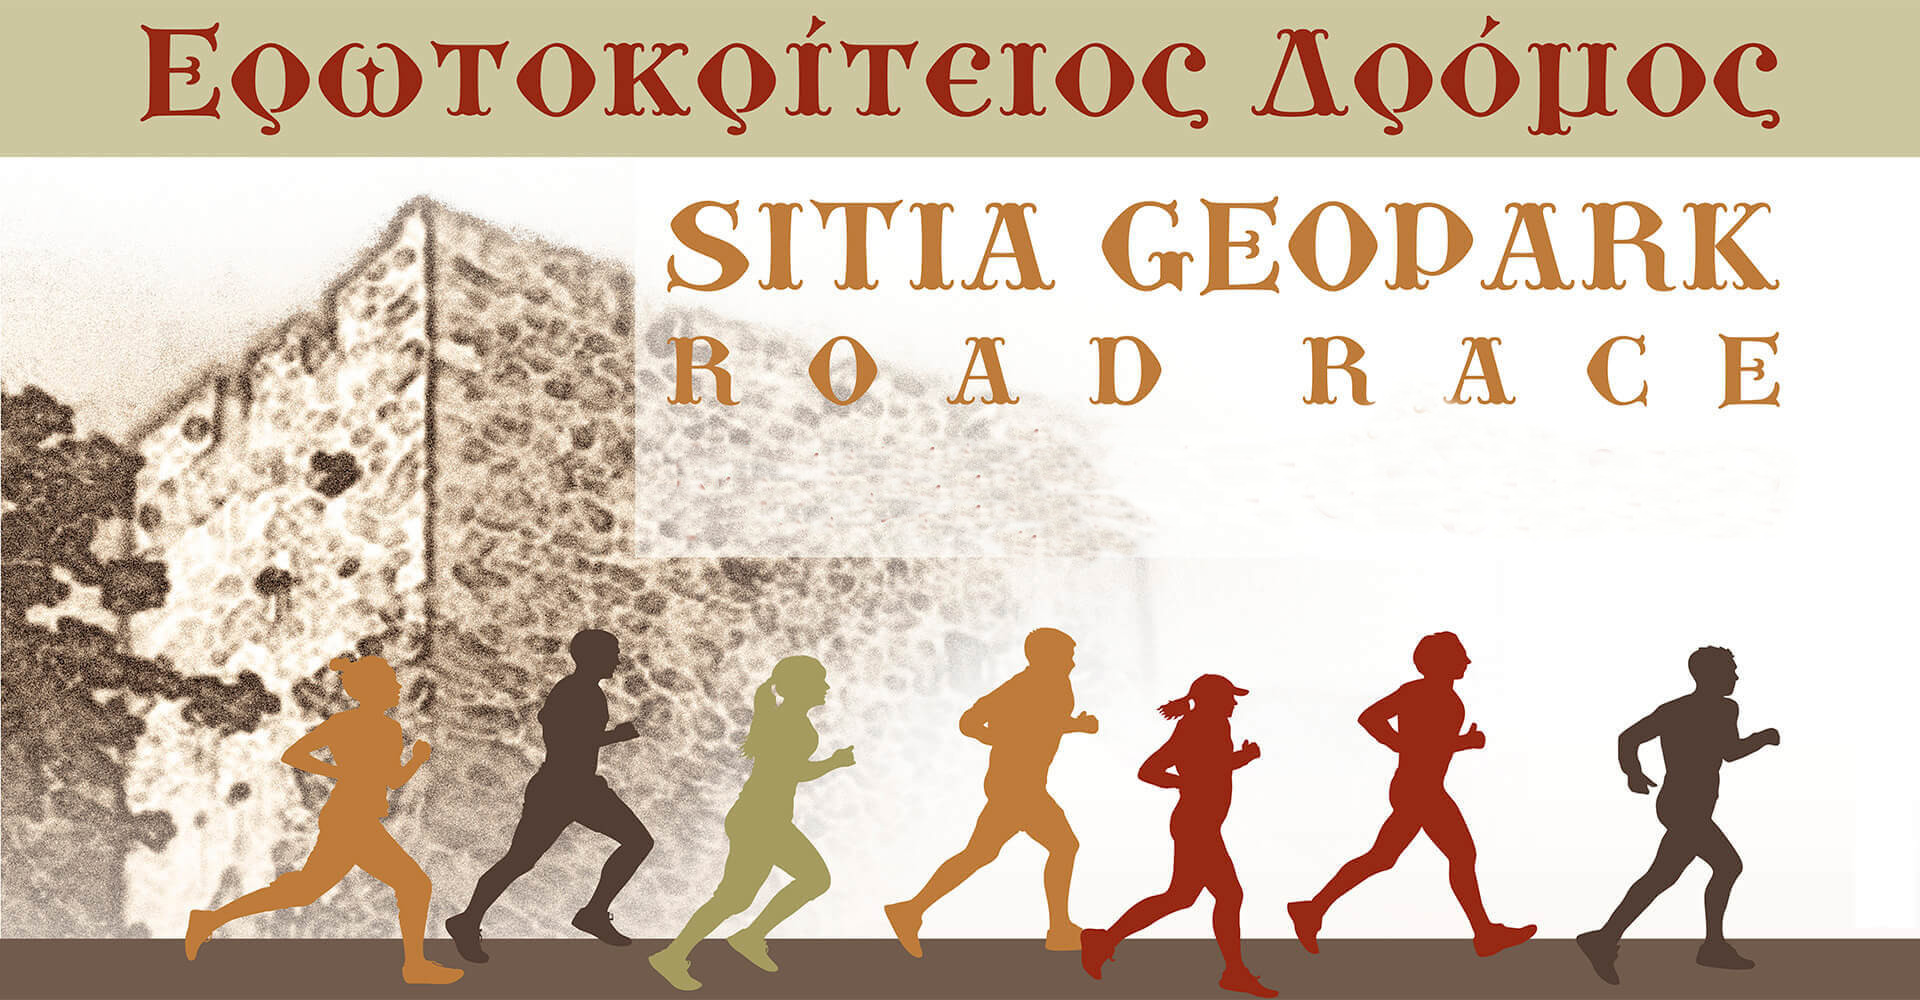 Sitia Geopark Road Race 2019 "Ερωτοκρίτειος Δρόμος" - 10χλμ